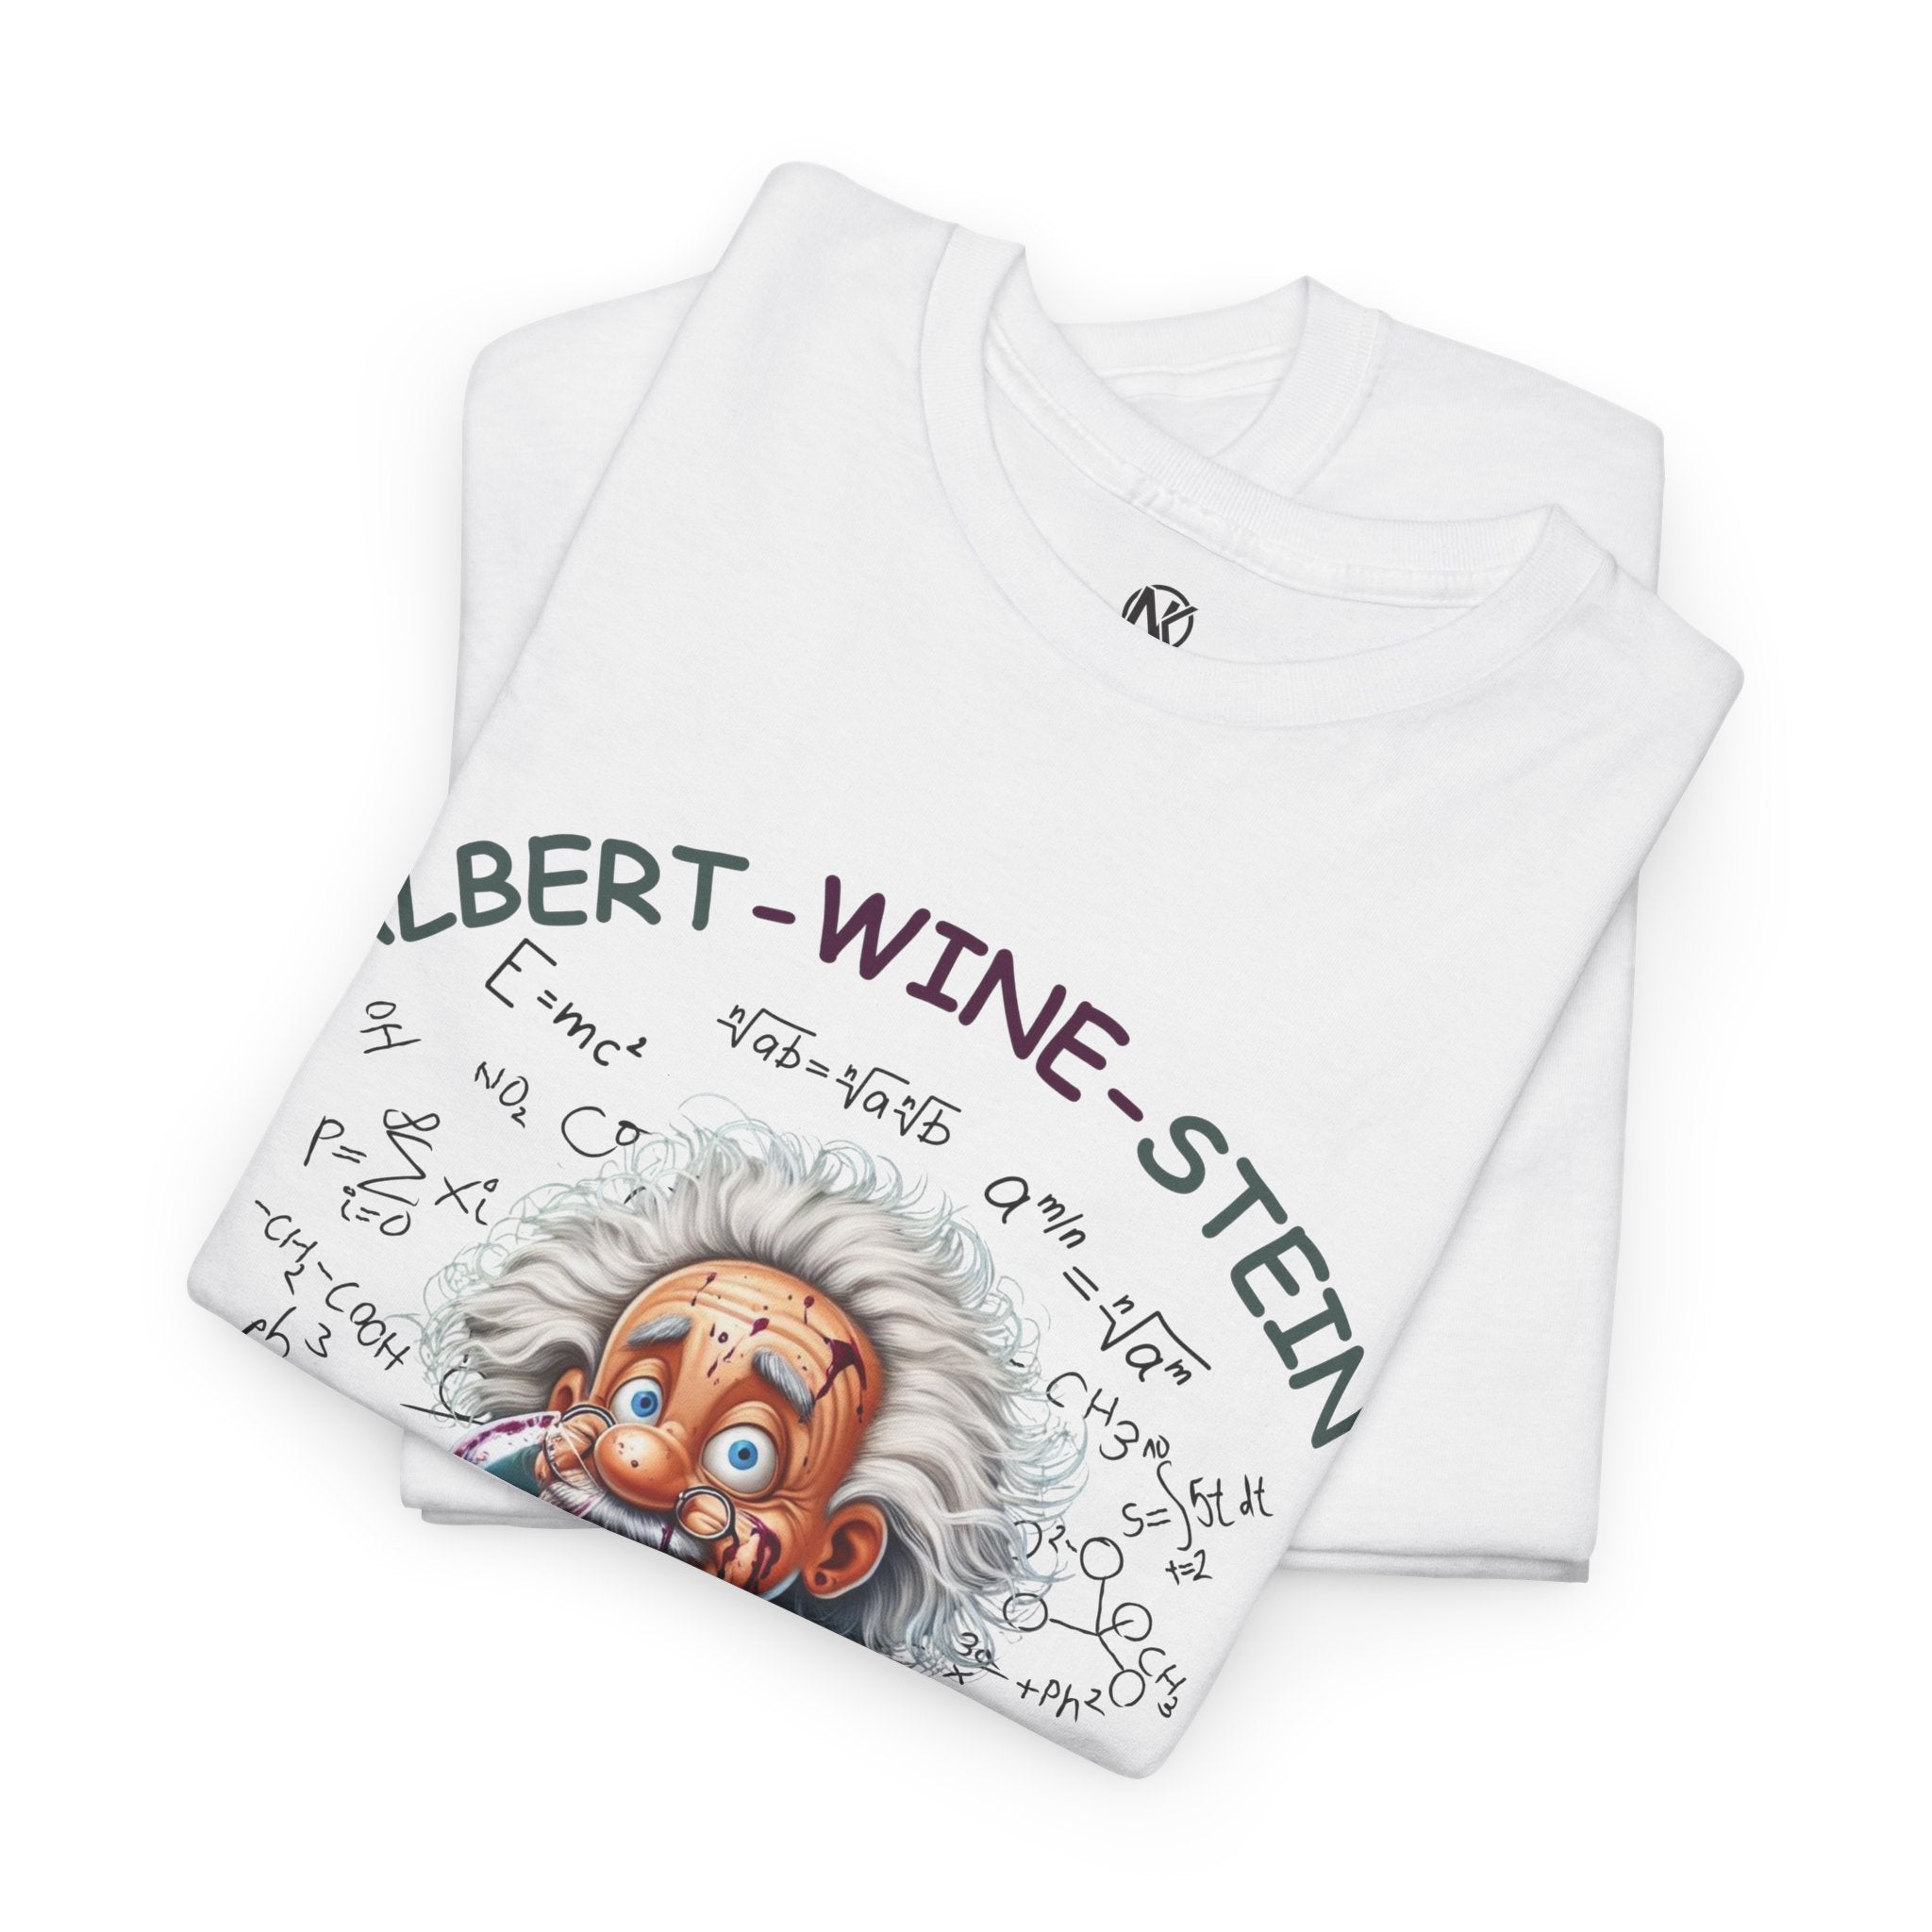 ALBERT-WINE-STAIN Unisex Heavy Cotton Tee T-Shirt Printify White S 